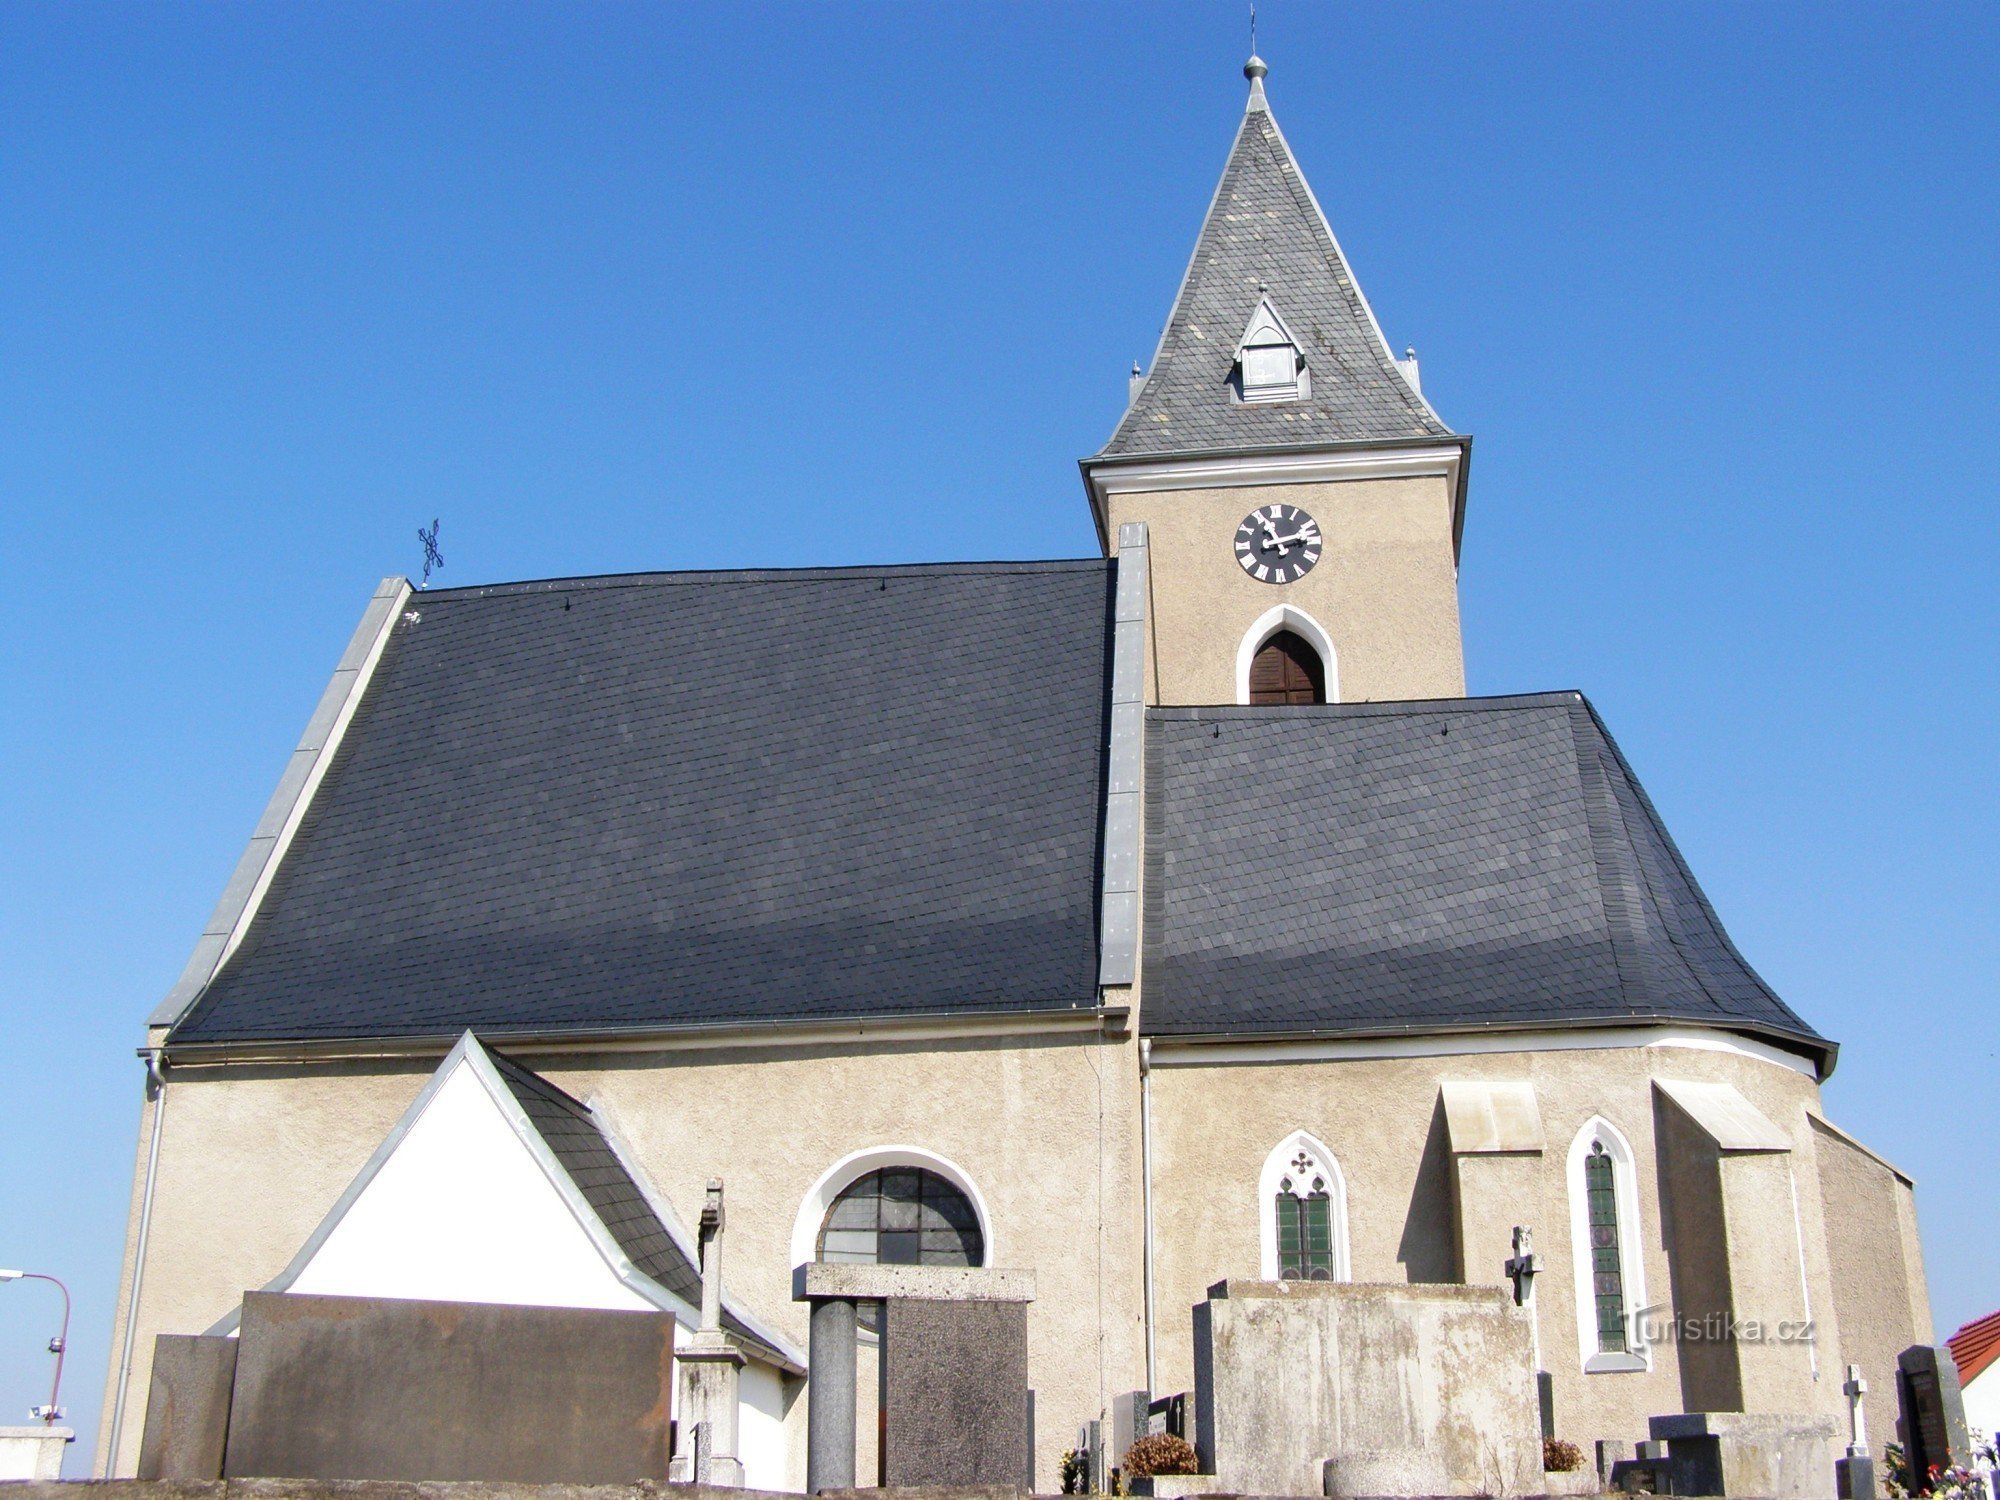 Dríteč - kyrkan St. Peter och Paul